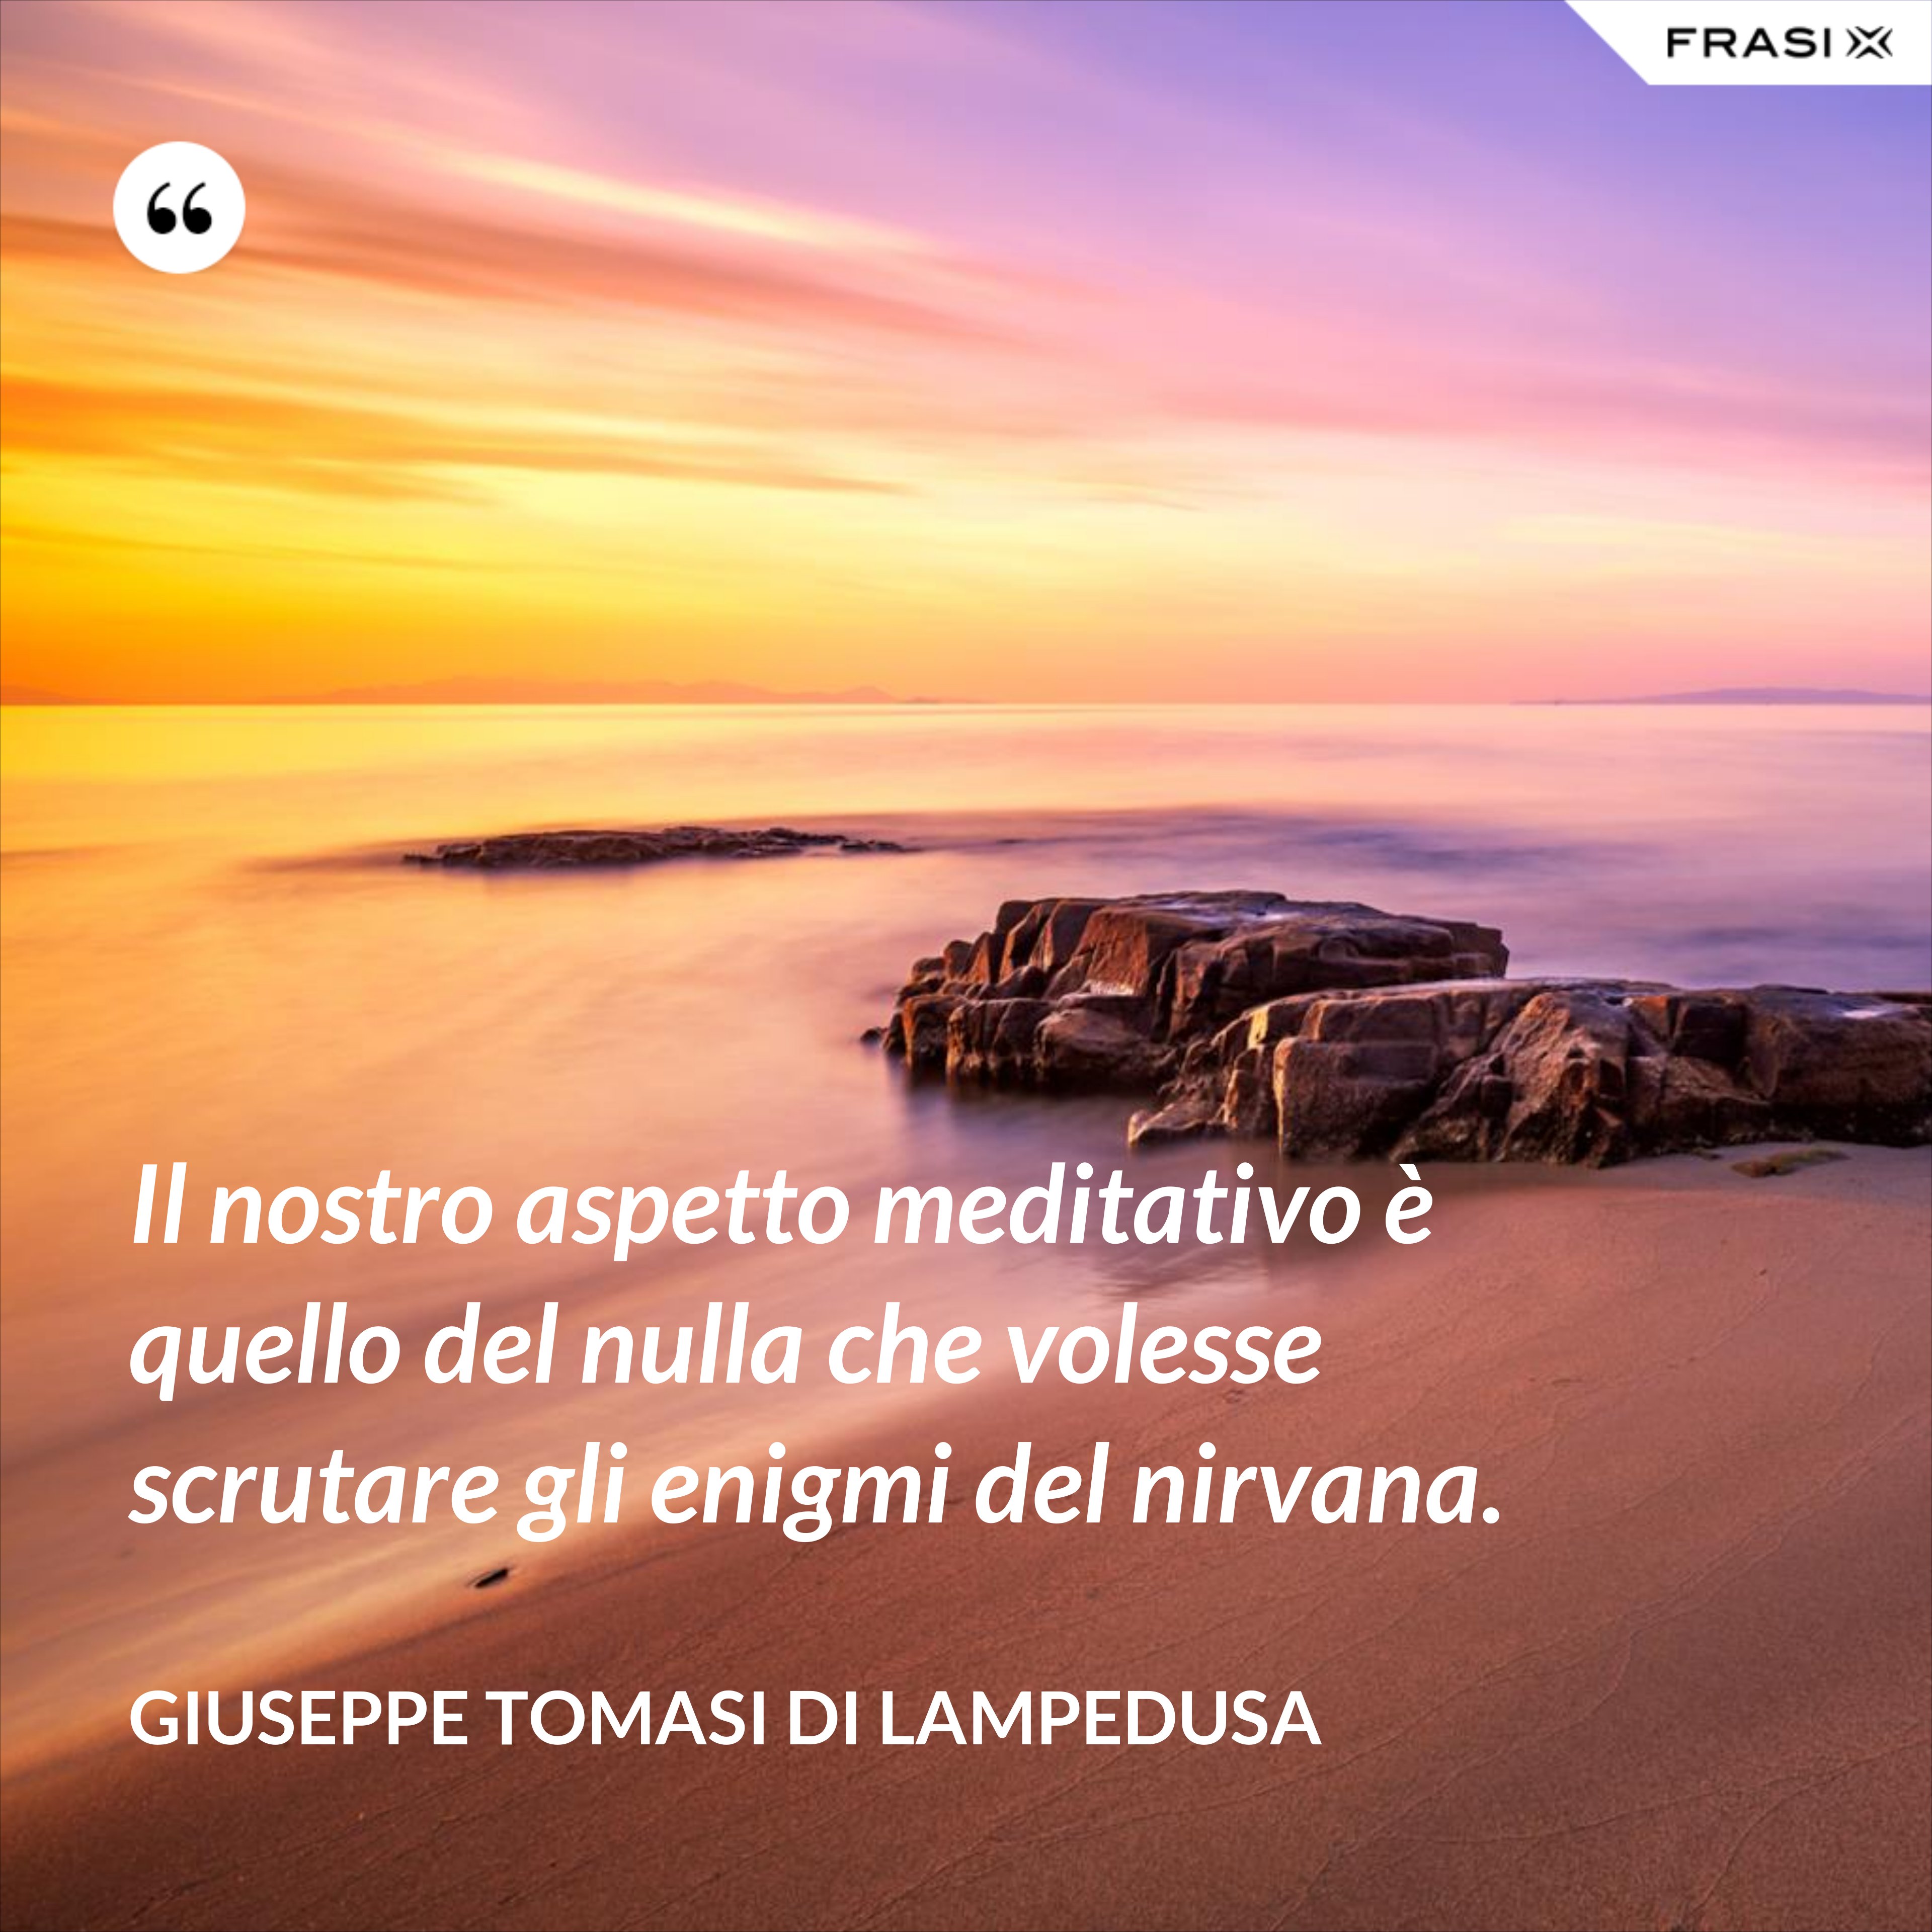 Il nostro aspetto meditativo è quello del nulla che volesse scrutare gli enigmi del nirvana. - Giuseppe Tomasi di Lampedusa